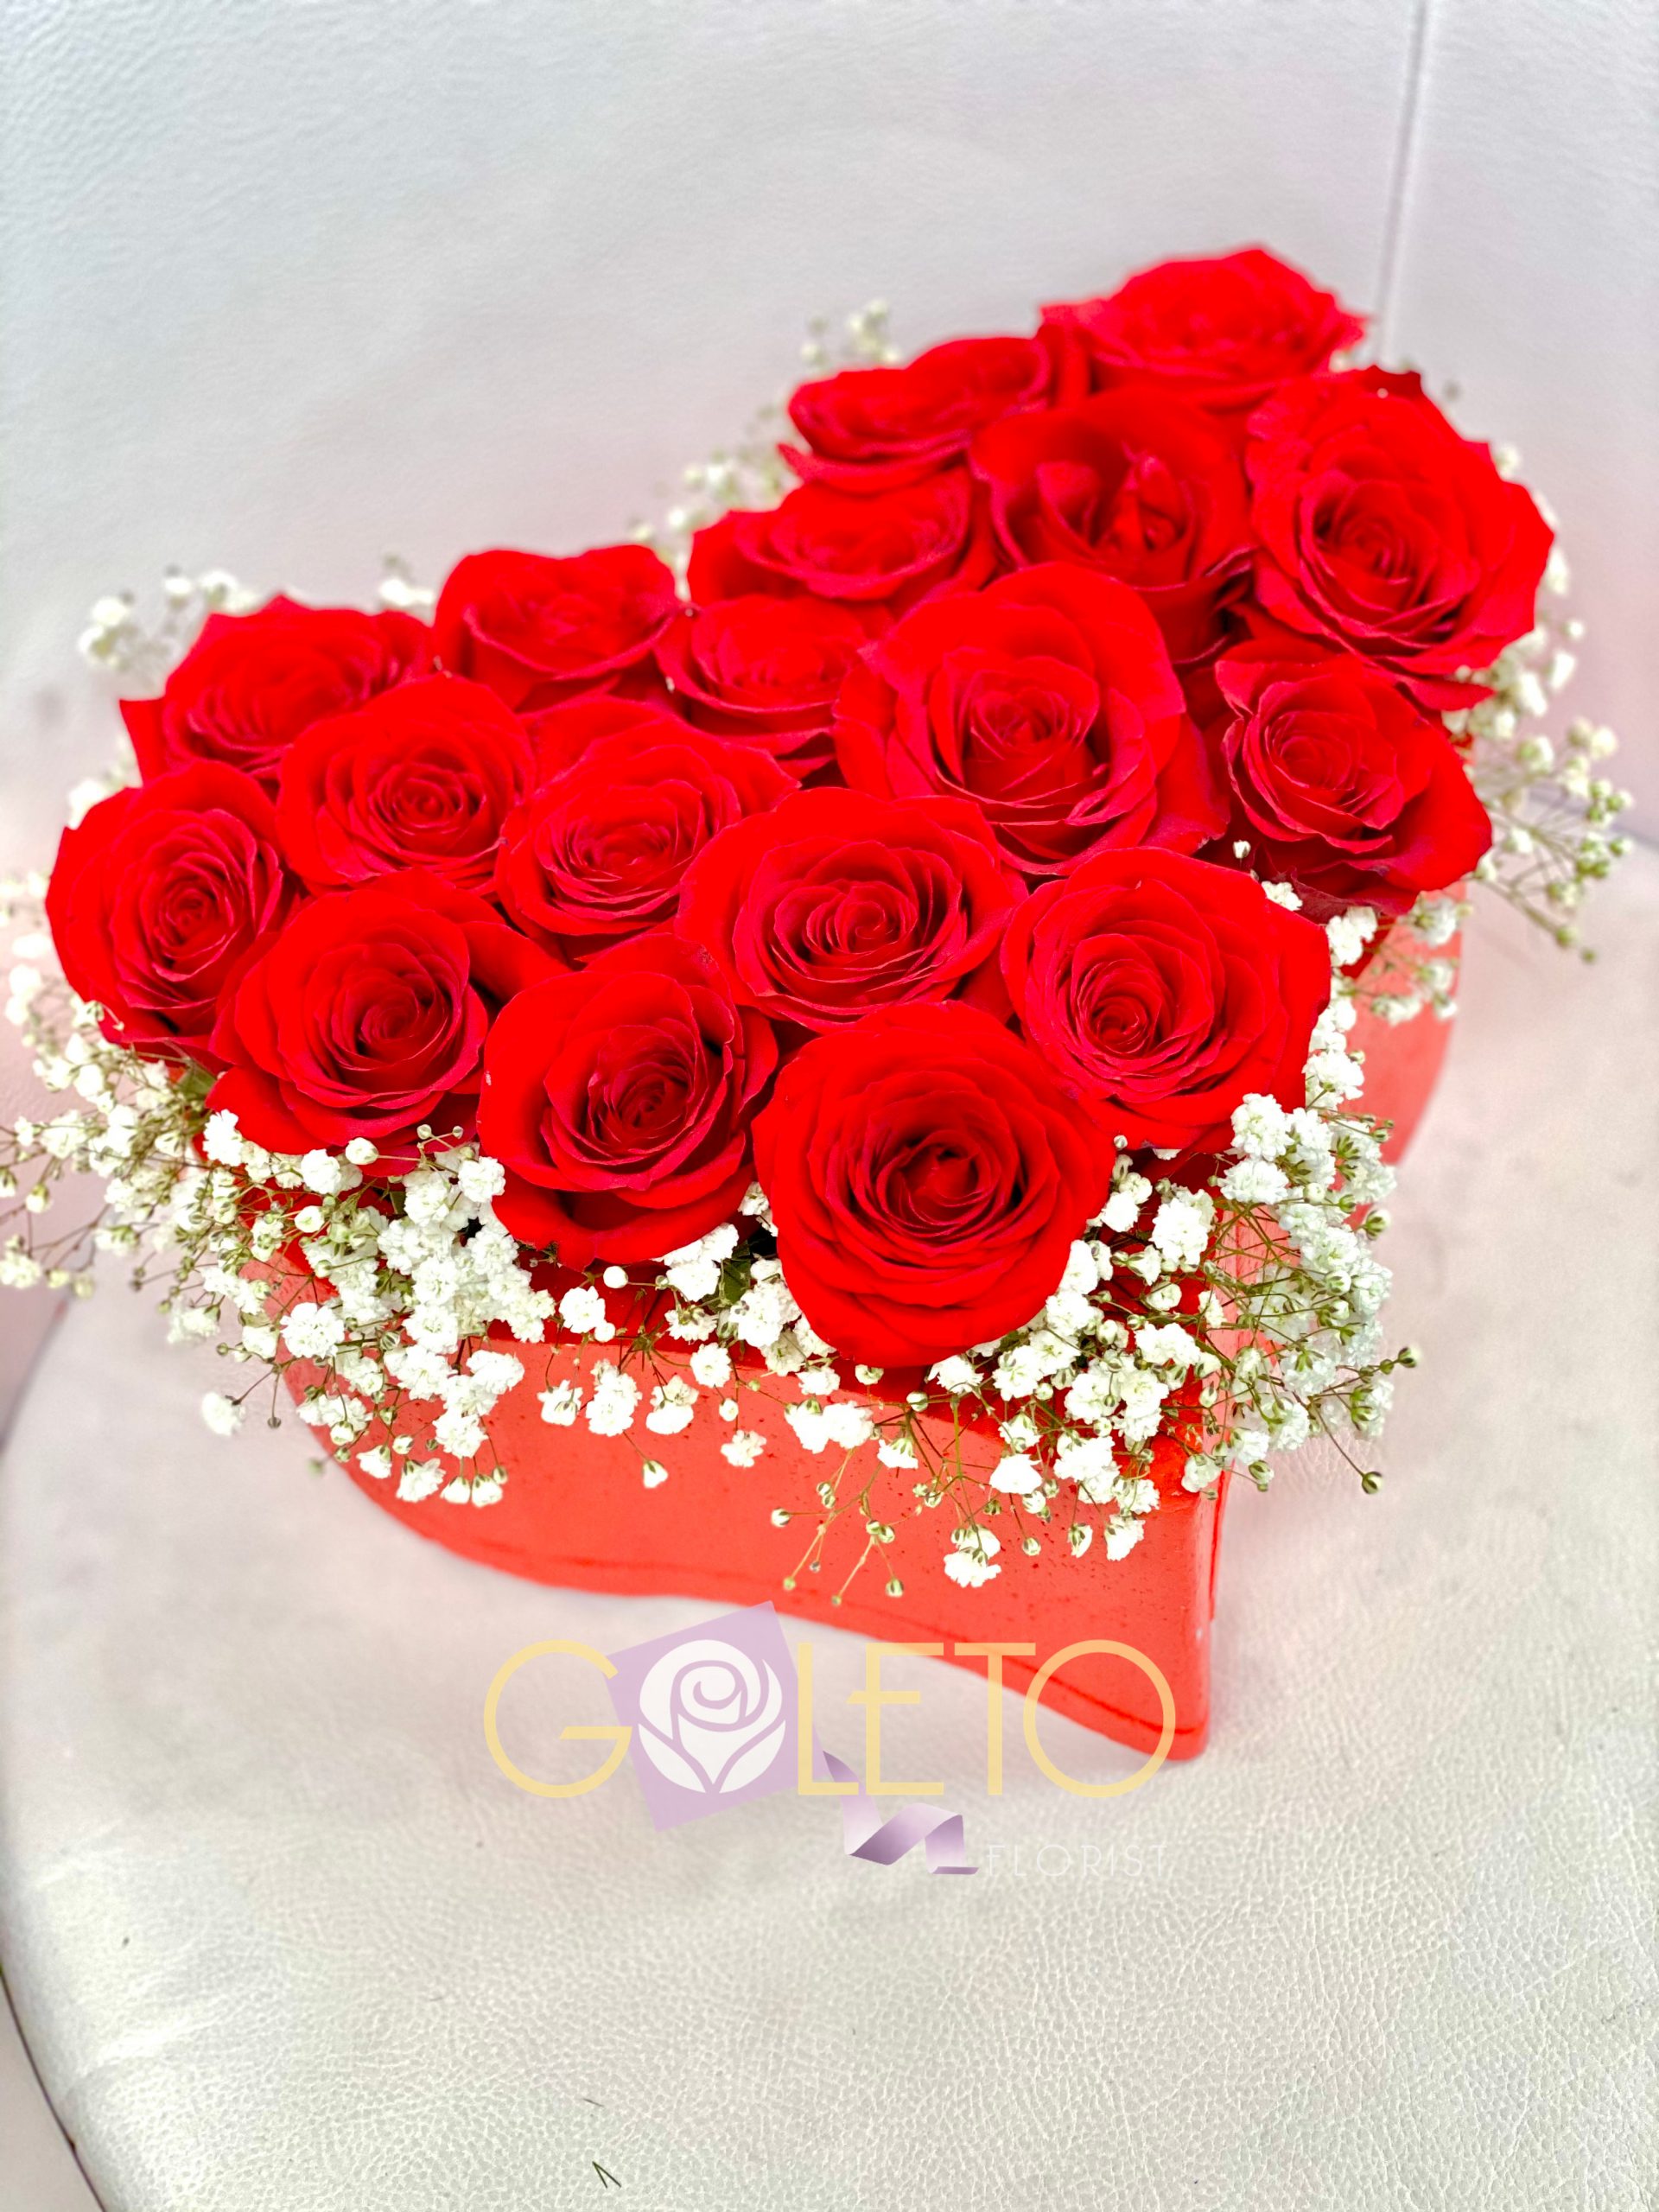 Roses & Heart - Goleto Florist